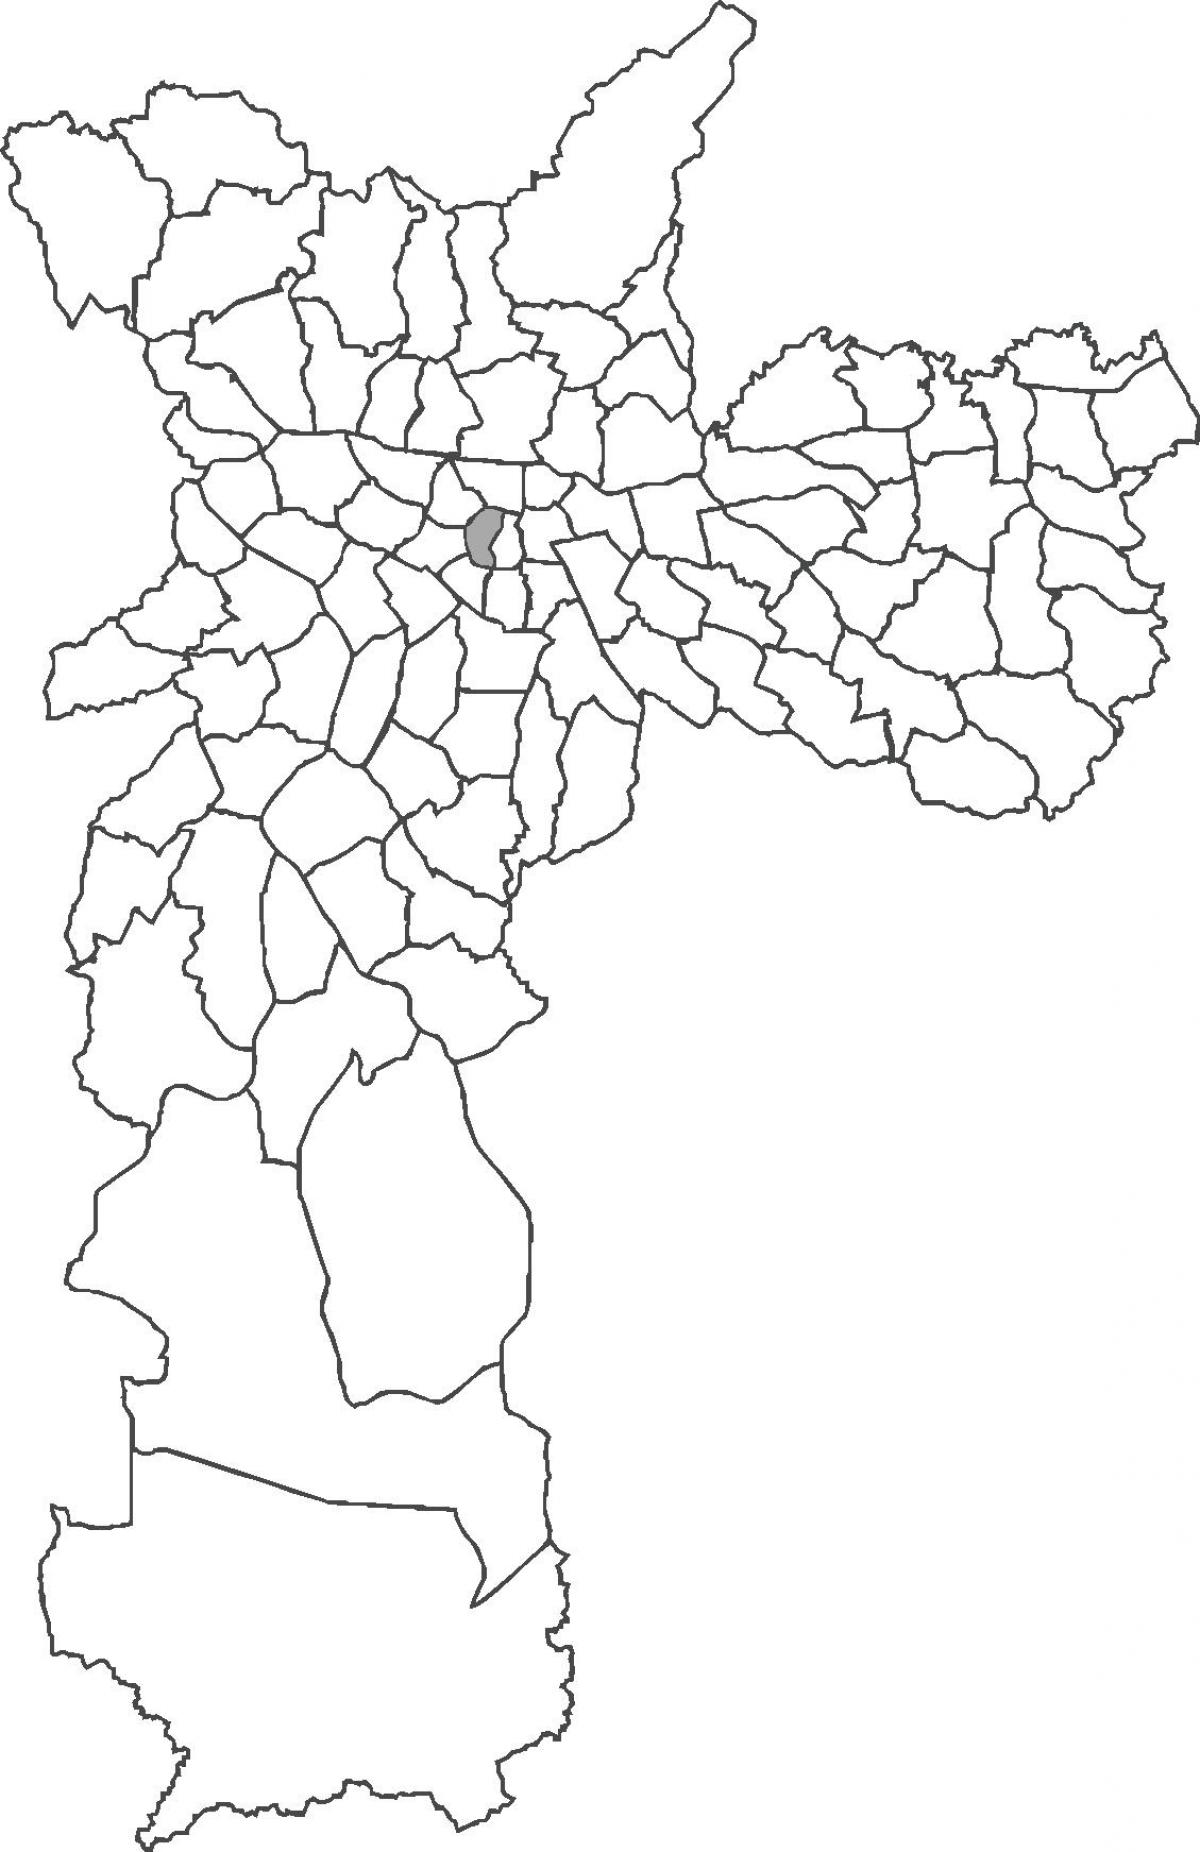 خريطة منطقة ريبوبليكا